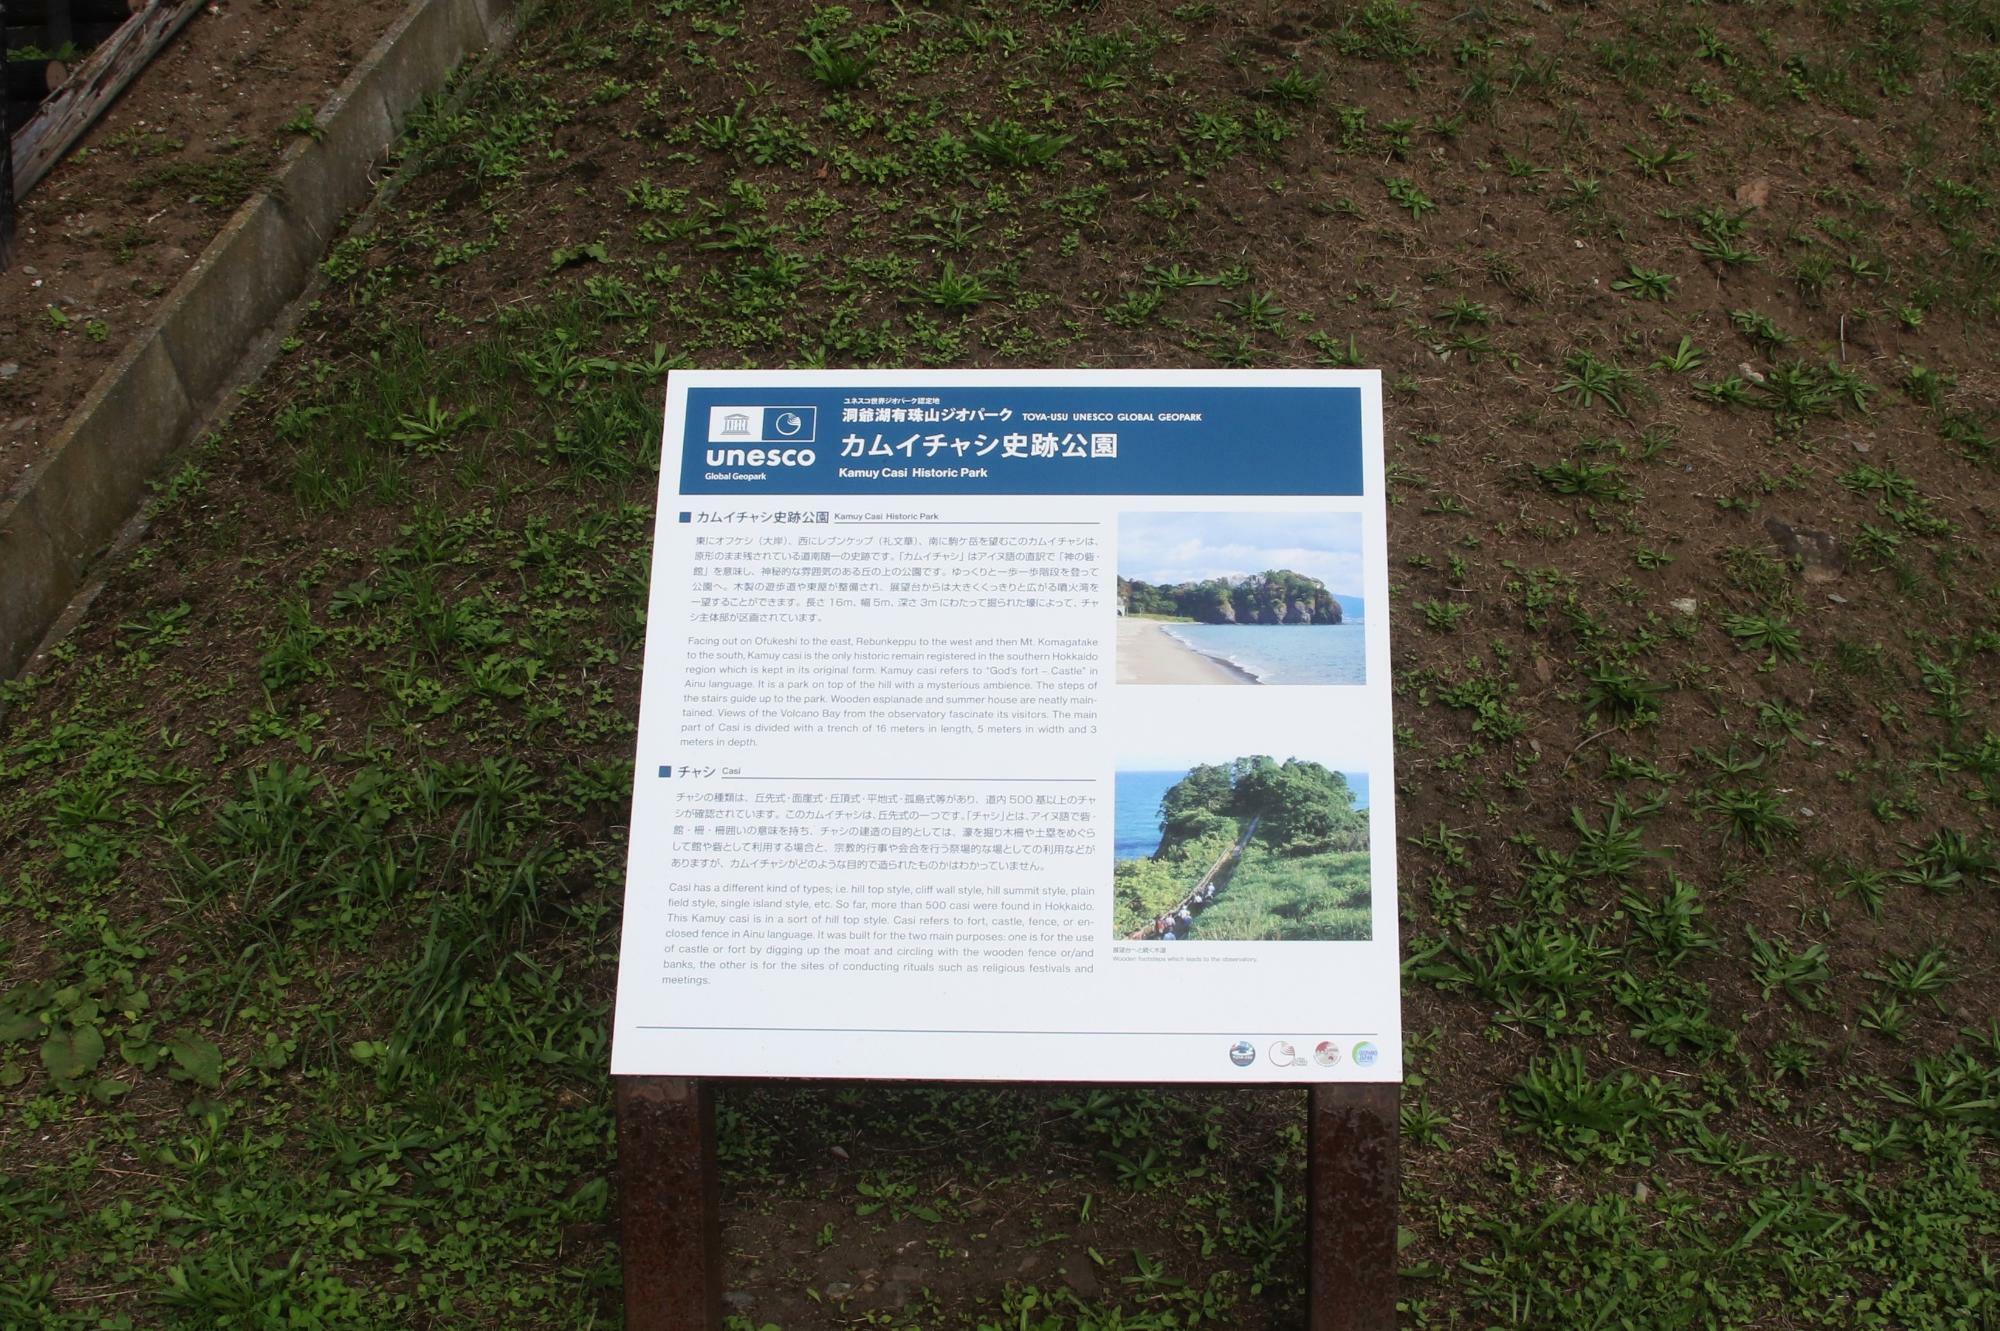 カムイチャシ史跡公園の日本語と英語による解説